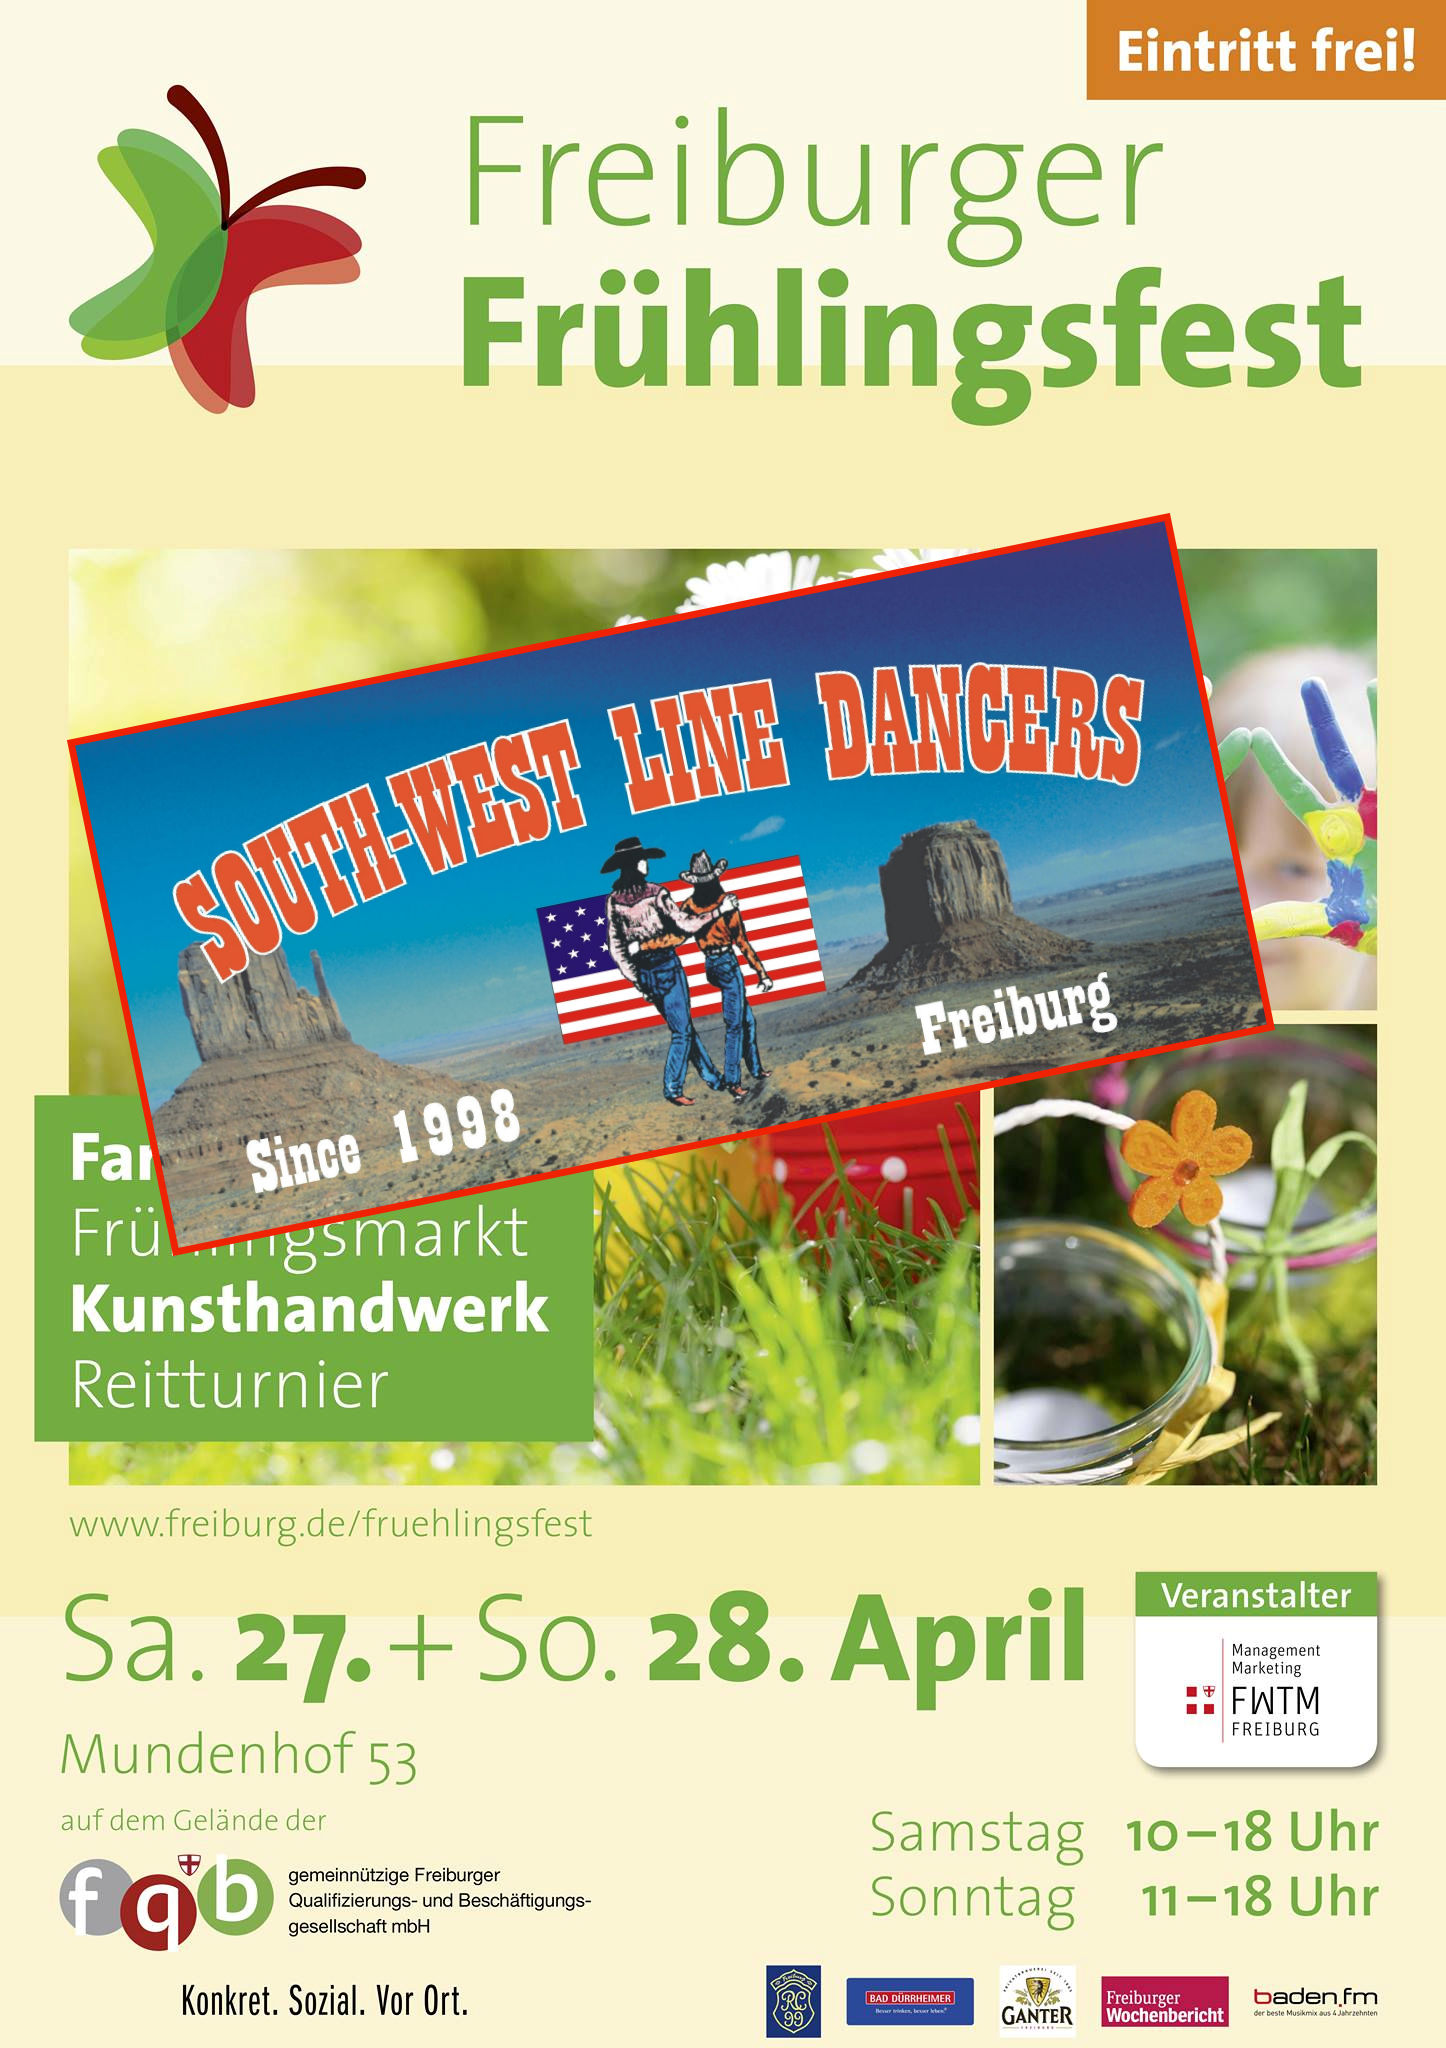 Freiburger Frühlingsfest am 27.+28. April 2019